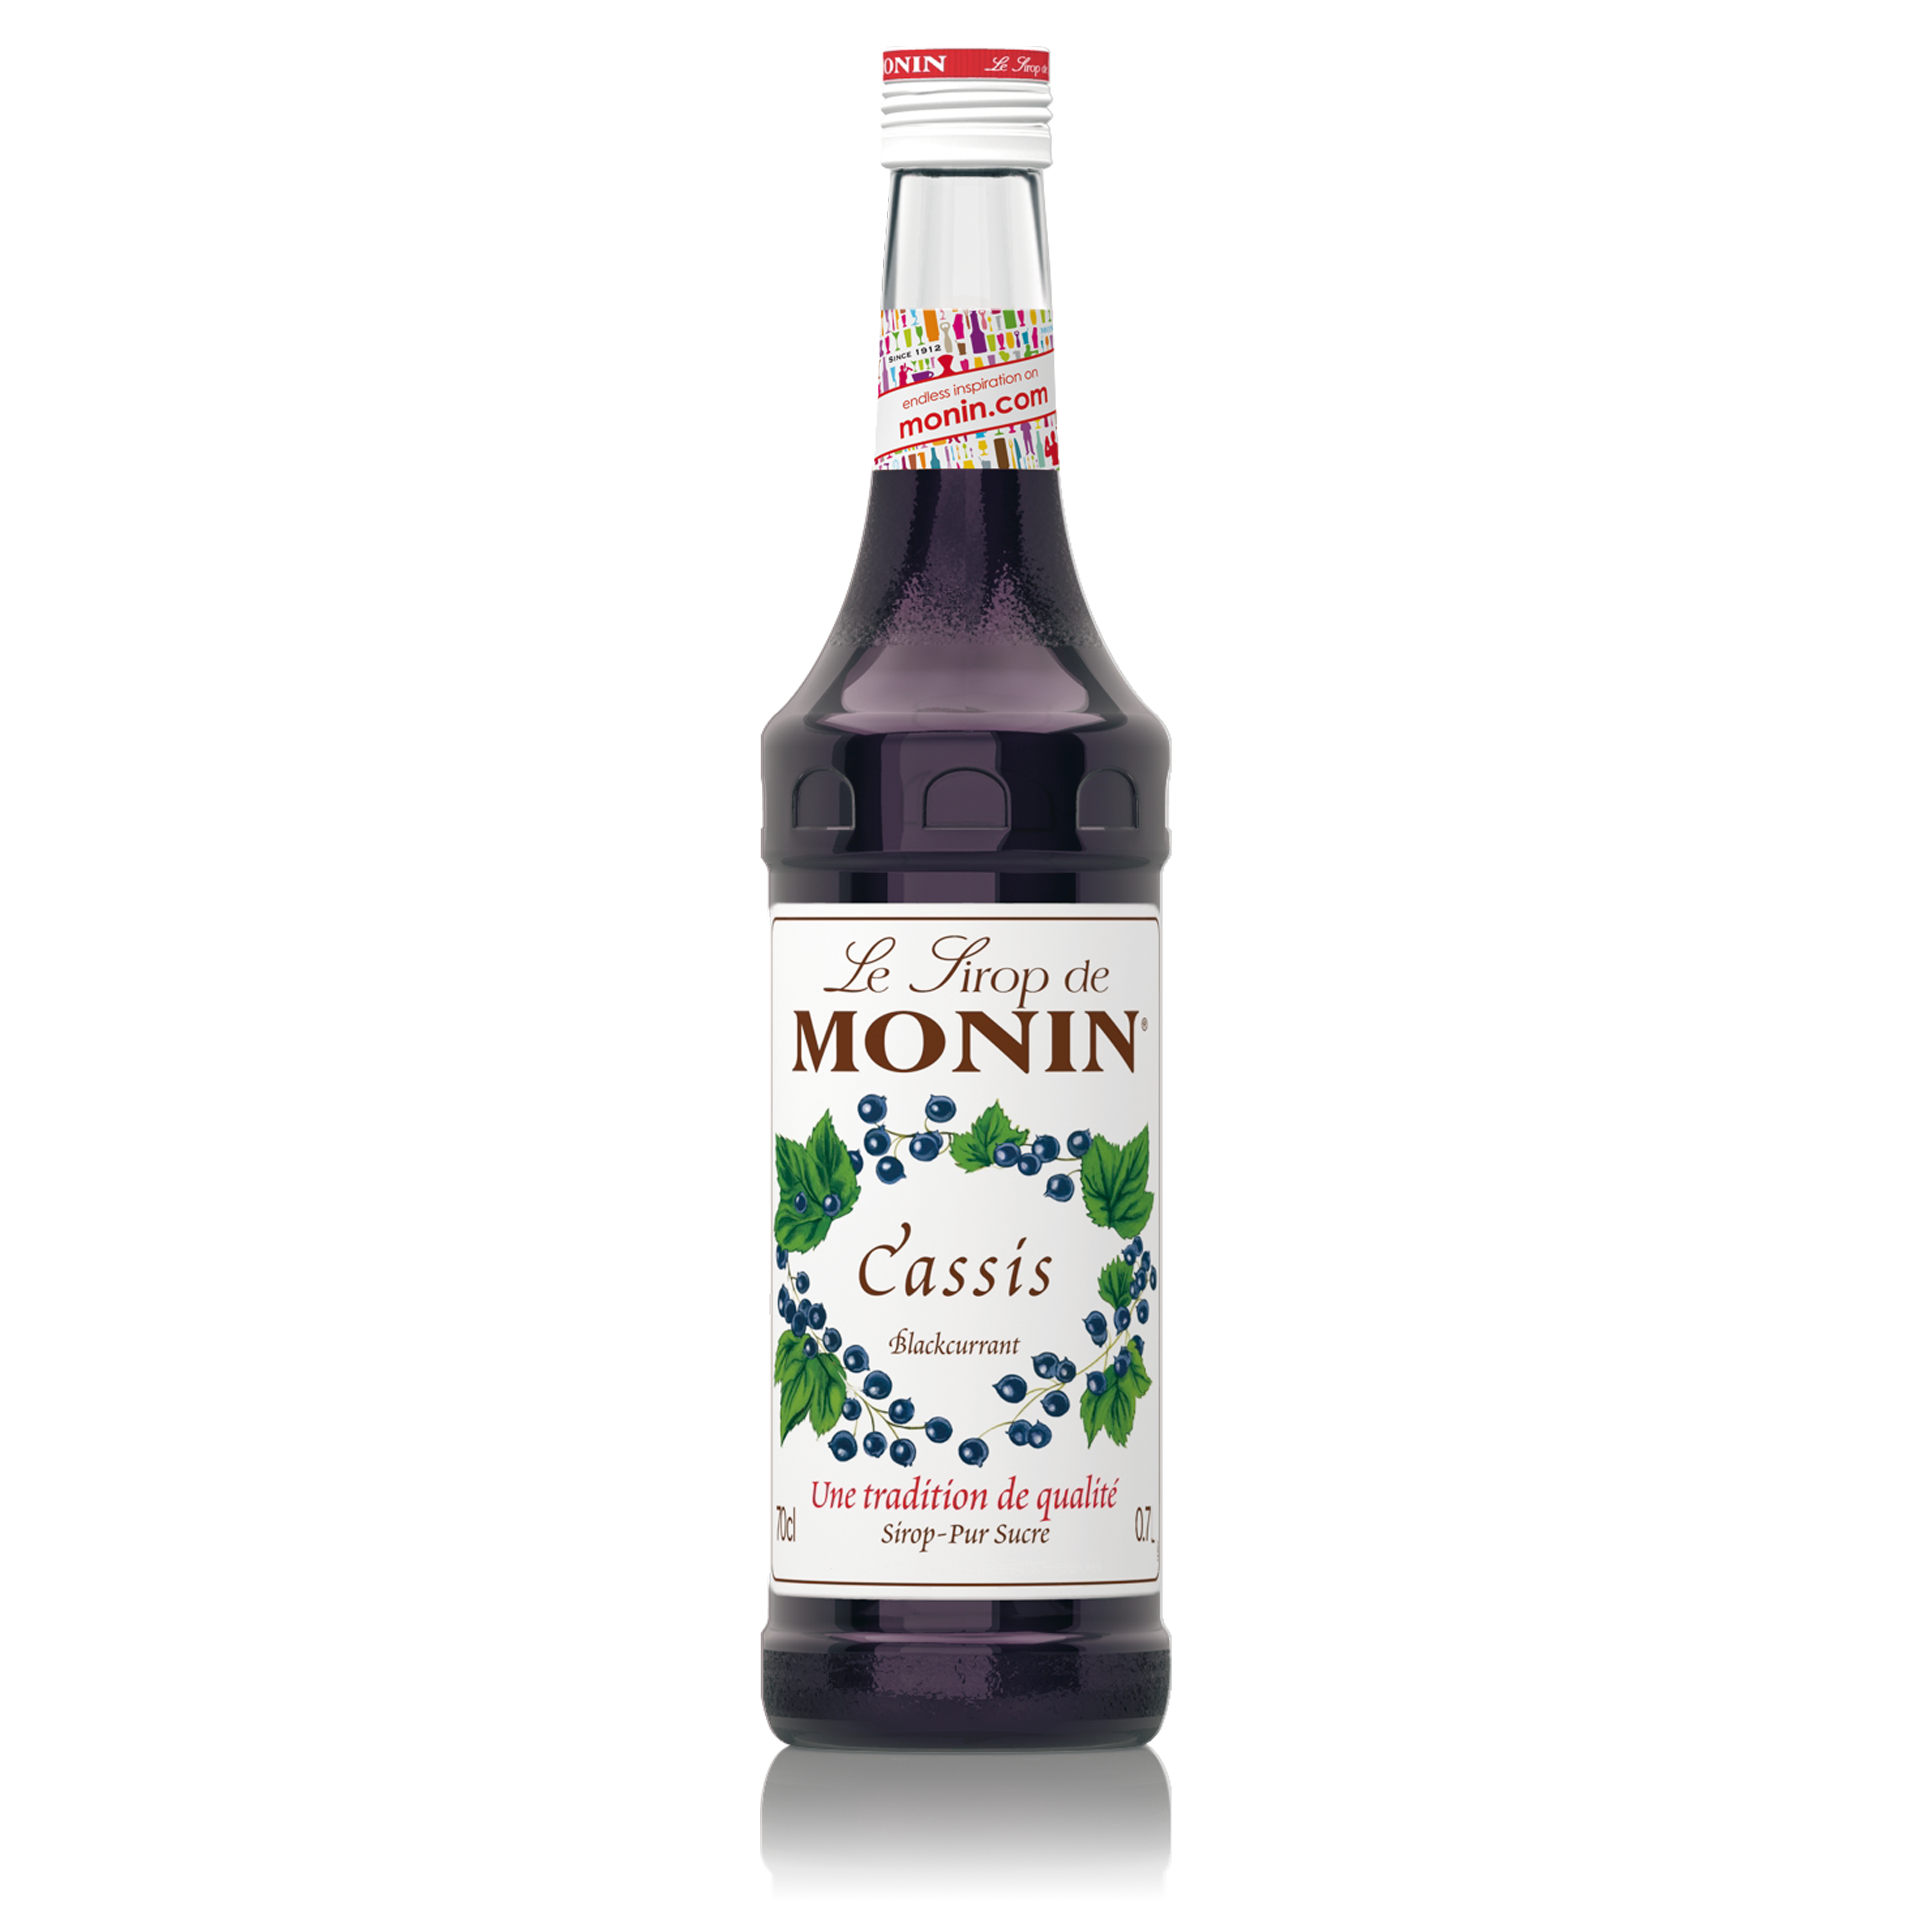 Monin Blackcurrant Syrup 700ml